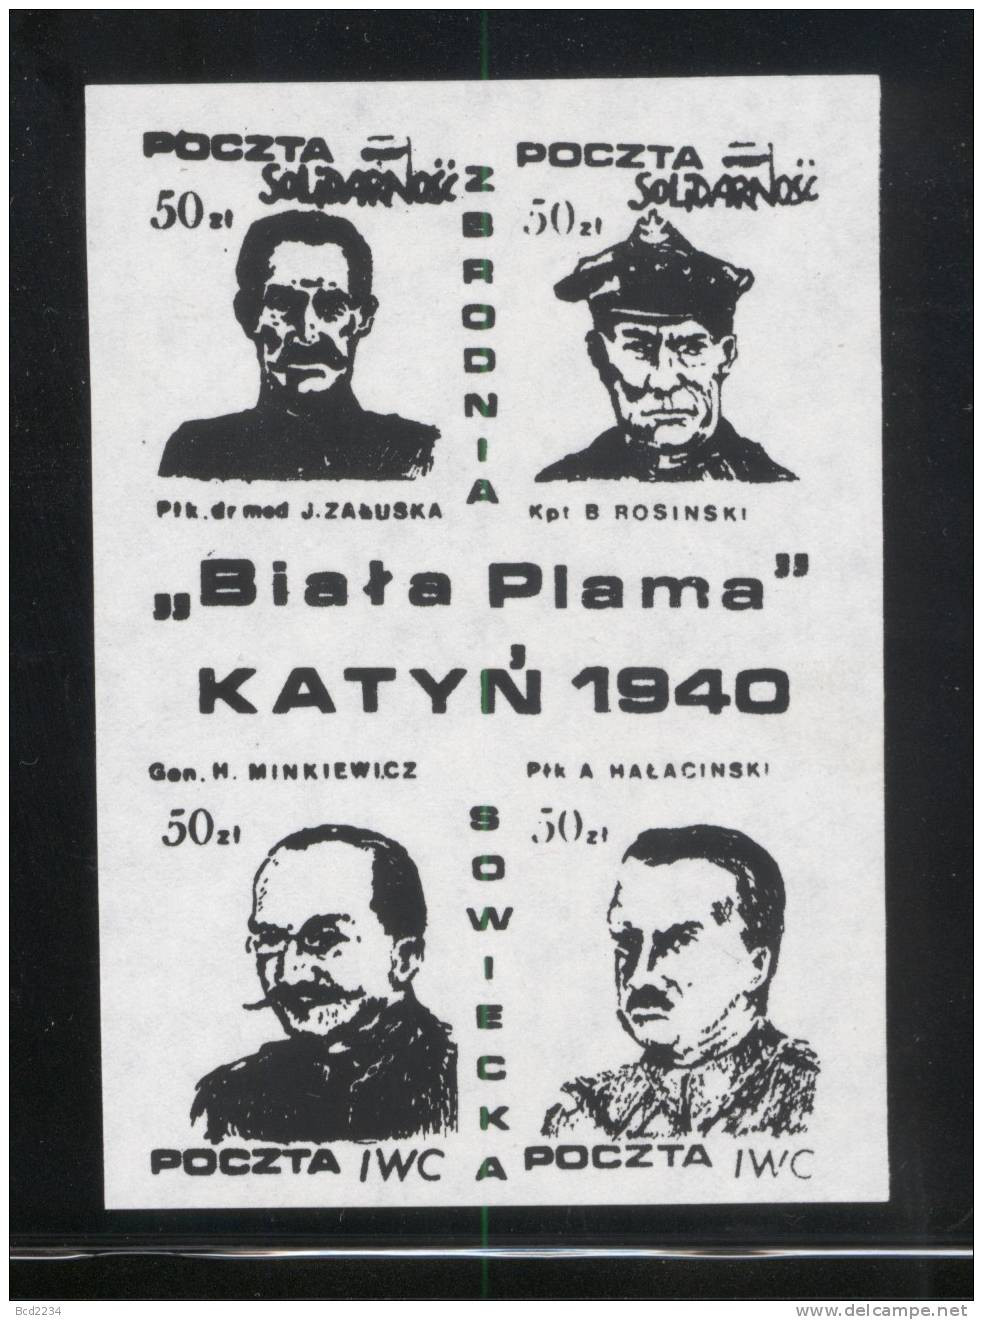 POLAND SOLIDARNOSC (POCZTA IWC) KATYN WHITE STAIN 1940 SET OF 3 BLOCKS OF 4 (SOLID0070/0211)) - Solidarnosc-Vignetten